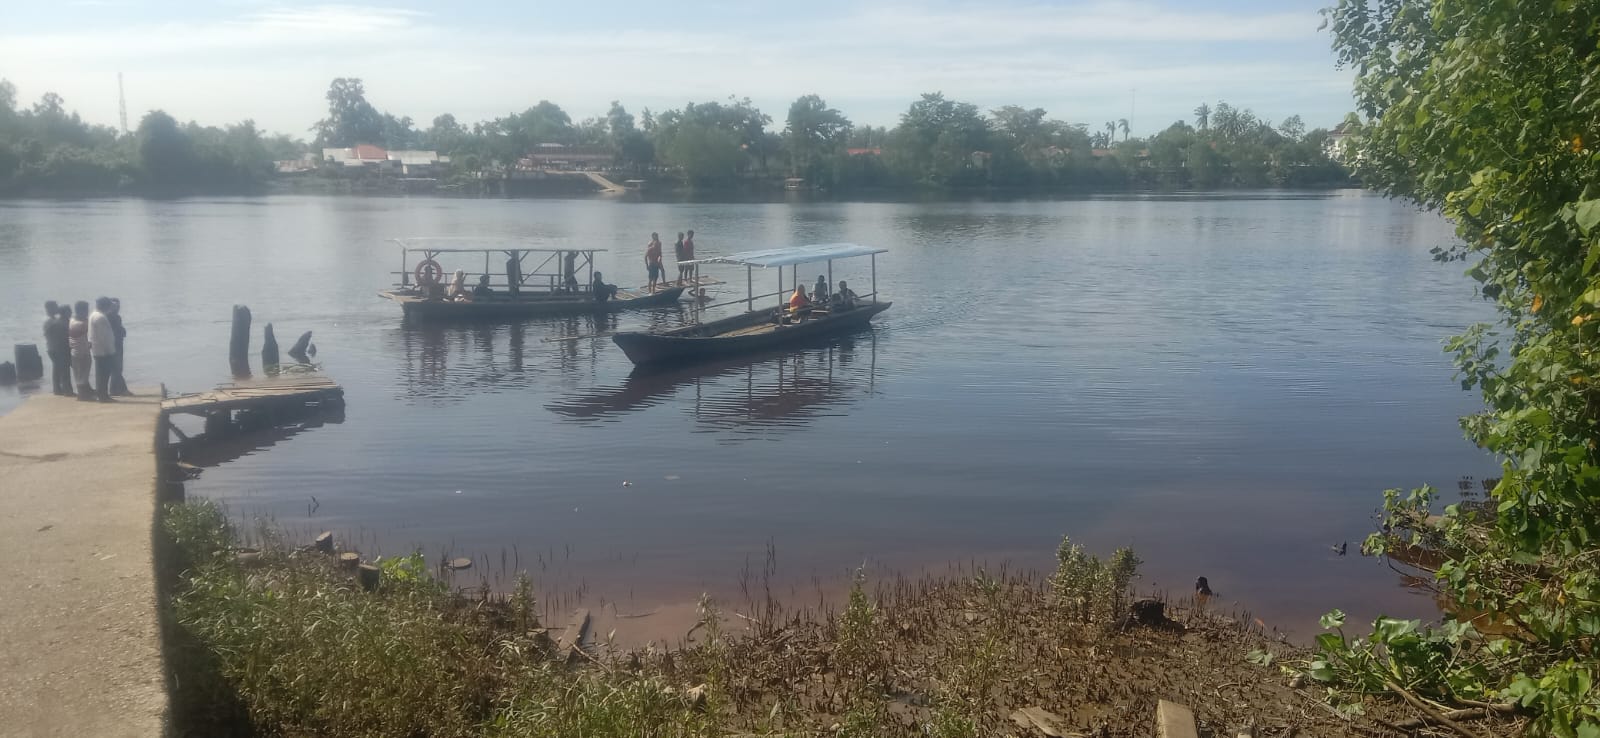 Diduga Bocor, Perahu Penyebrangan Rakyat di Siak Karam, Semua Penumpang Selamat